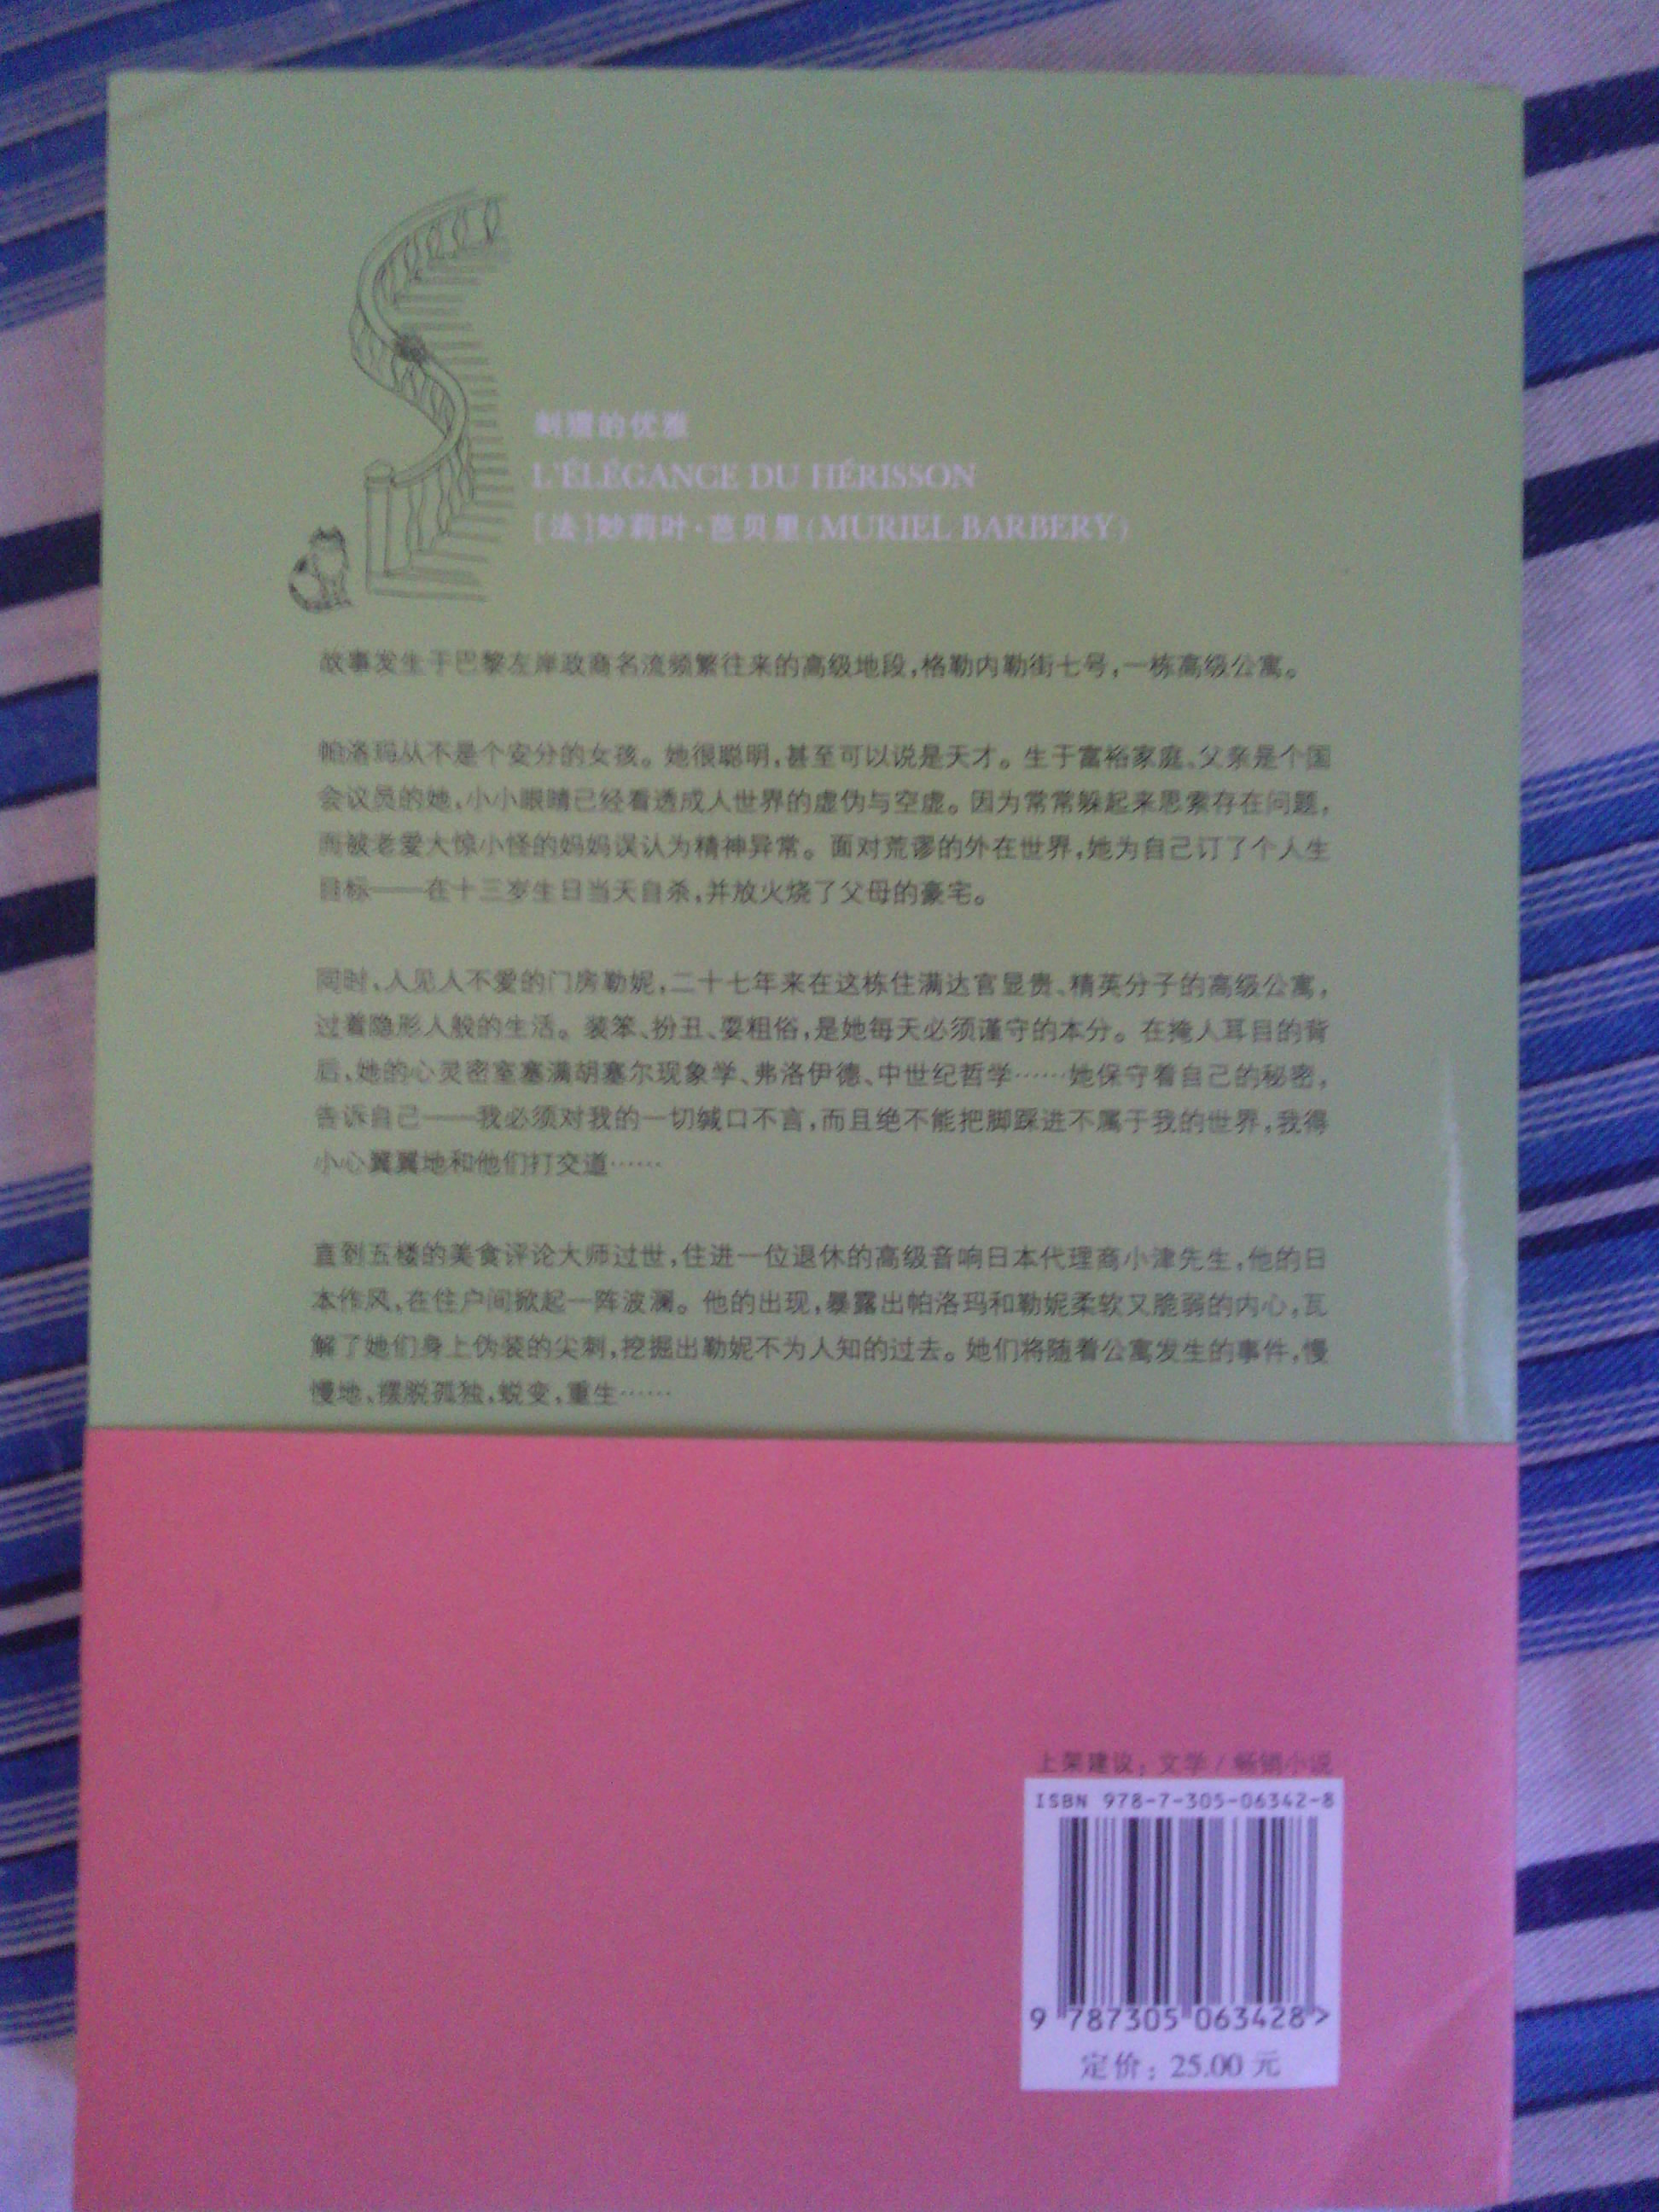 物流快，服务好，书的质量好，最重要的是小说内容很吸引人，支持上海译文出版社，好书！